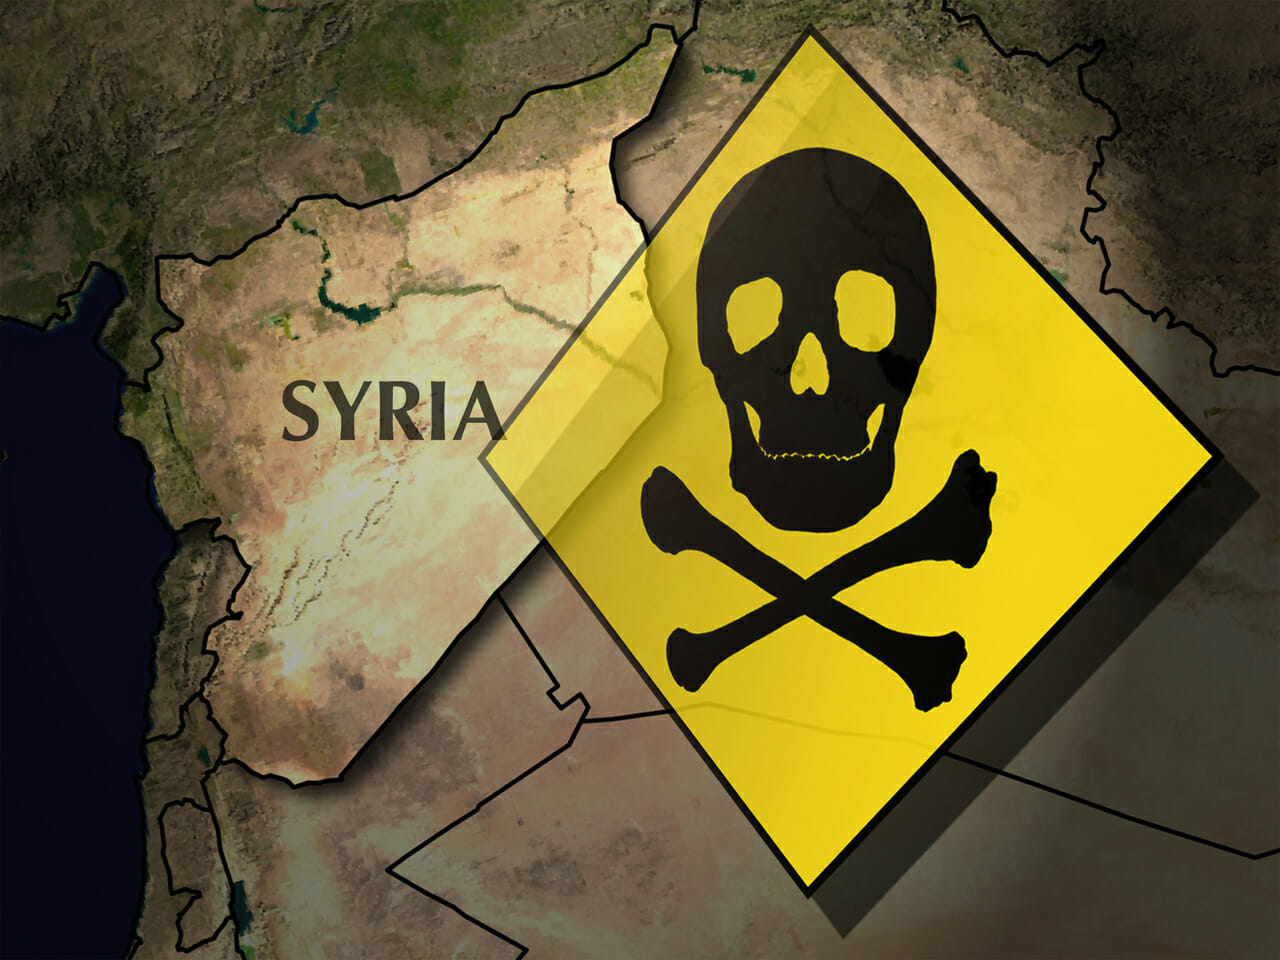 Warum hat Assad chemische Waffen eingesetzt? Weil er es kann